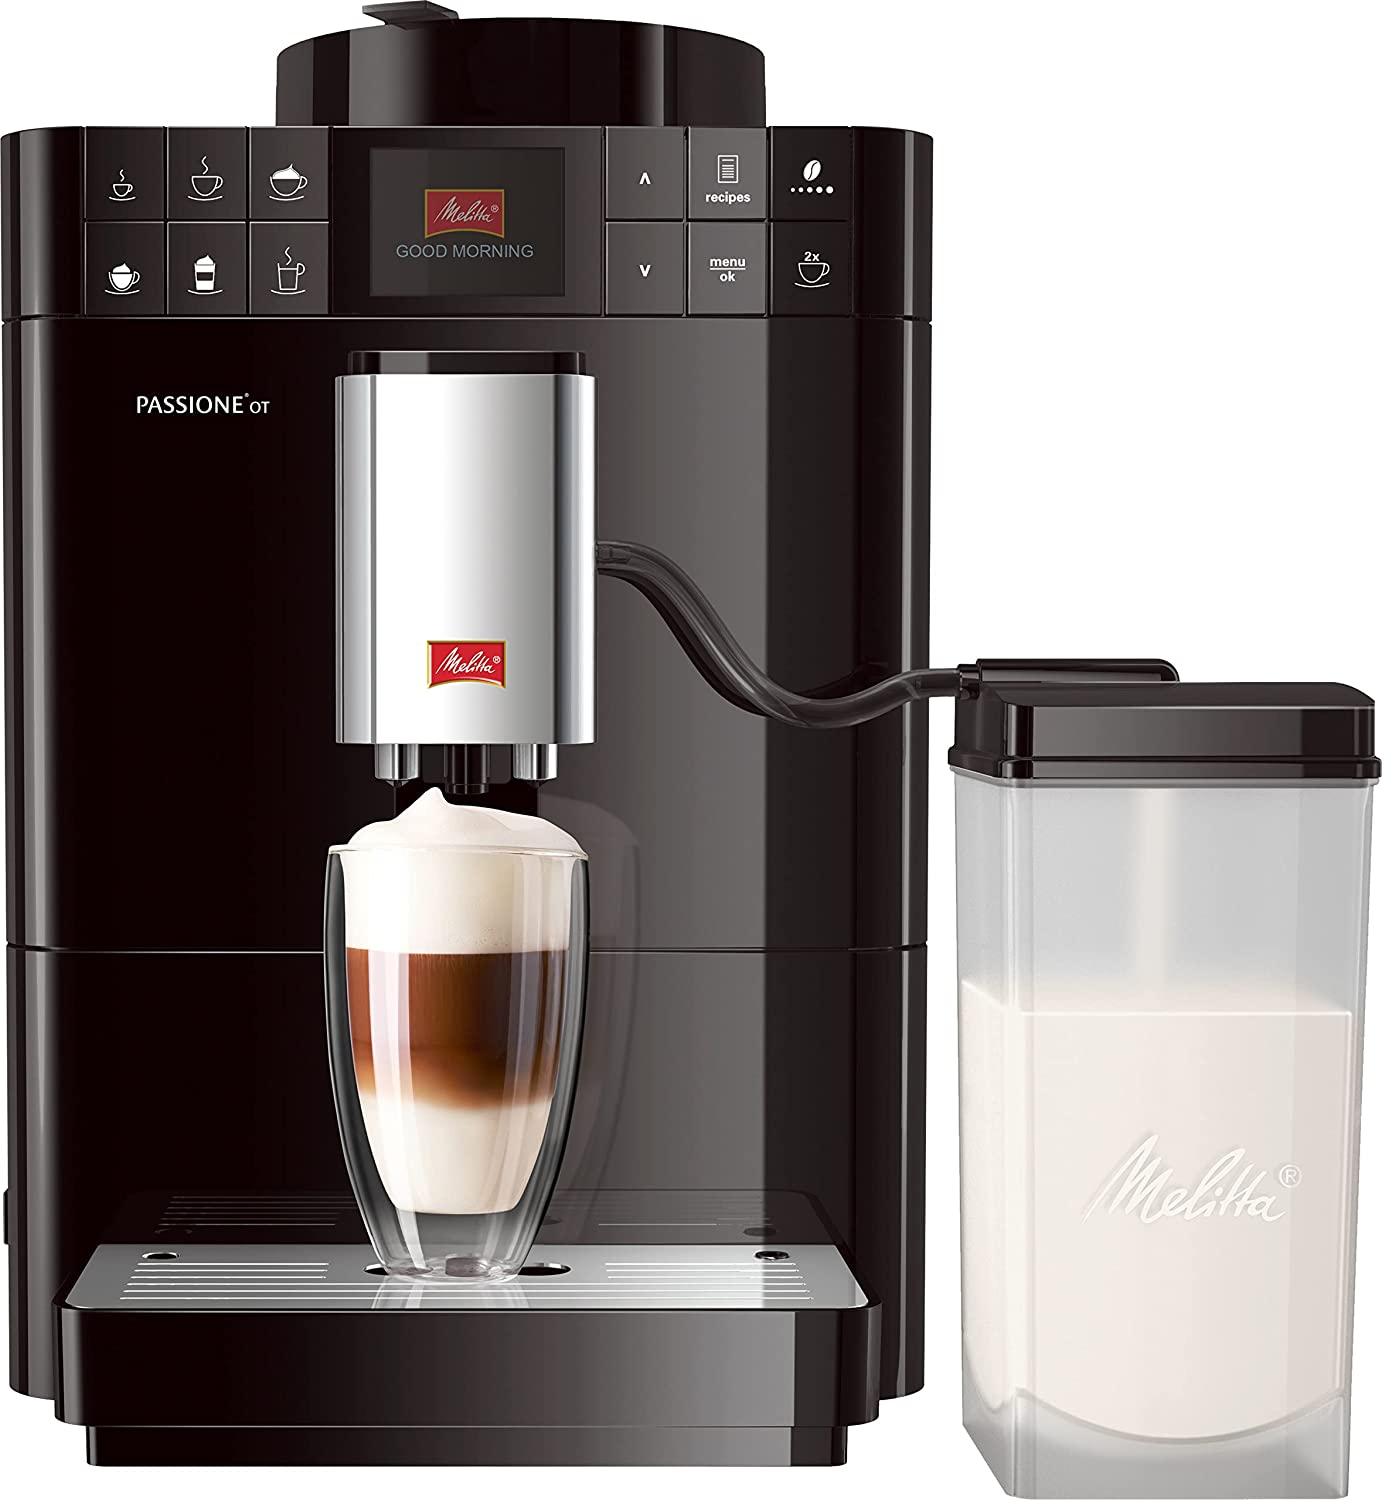 Melitta F53/1-102 Passione OT, Fully Automatic Coffee Machine - Black